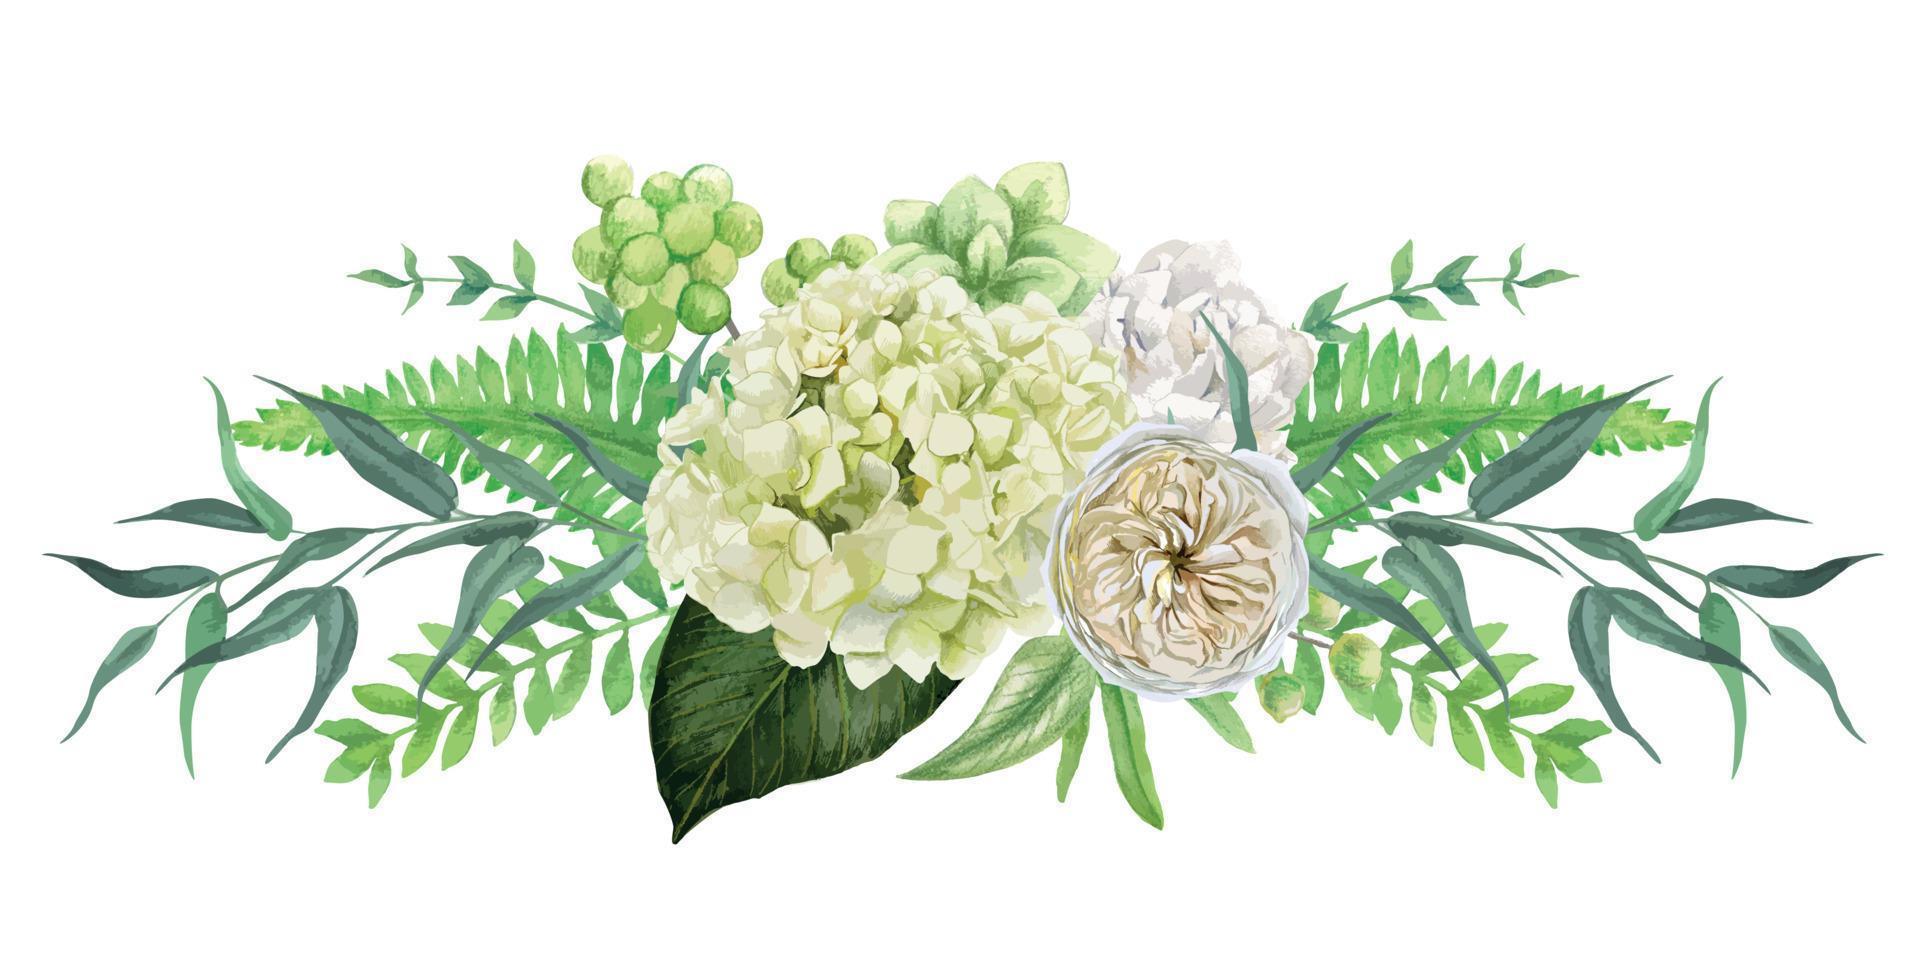 buquê de flores brancas exuberantes simétricas com folhas rosas e verdes, ilustração em aquarela vetorial desenhada à mão vetor